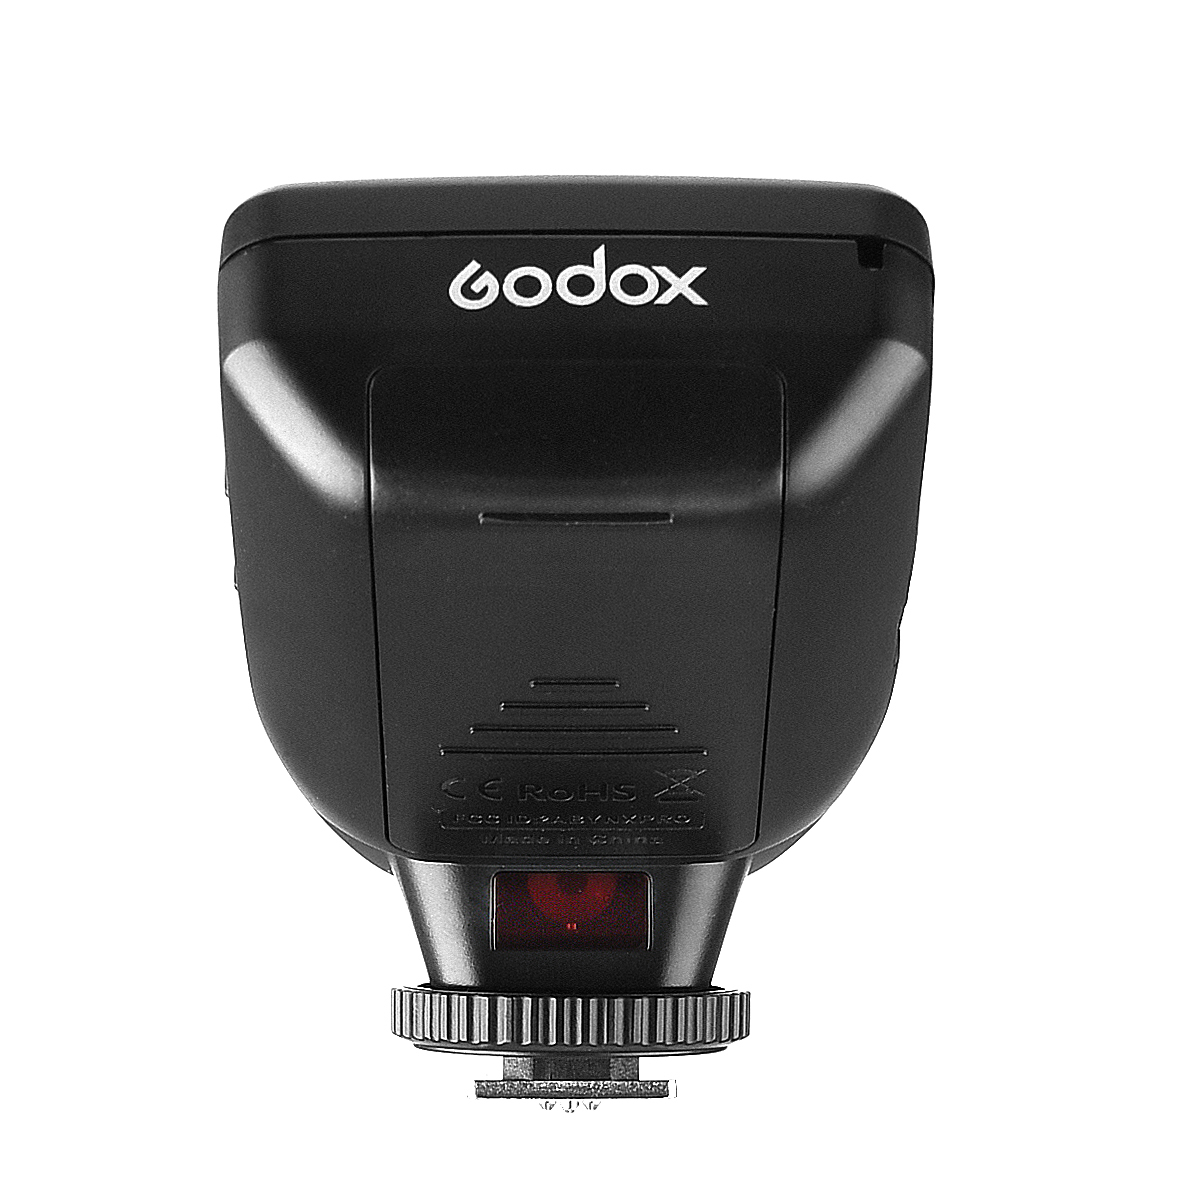 送料無料 新品 Nikon ニコン 一眼レフカメラ E-TTL 高速同期 II 1 / 8000s 2.4G ワイヤレスフラッシュトリガー Xシステム Godox Xpro-N